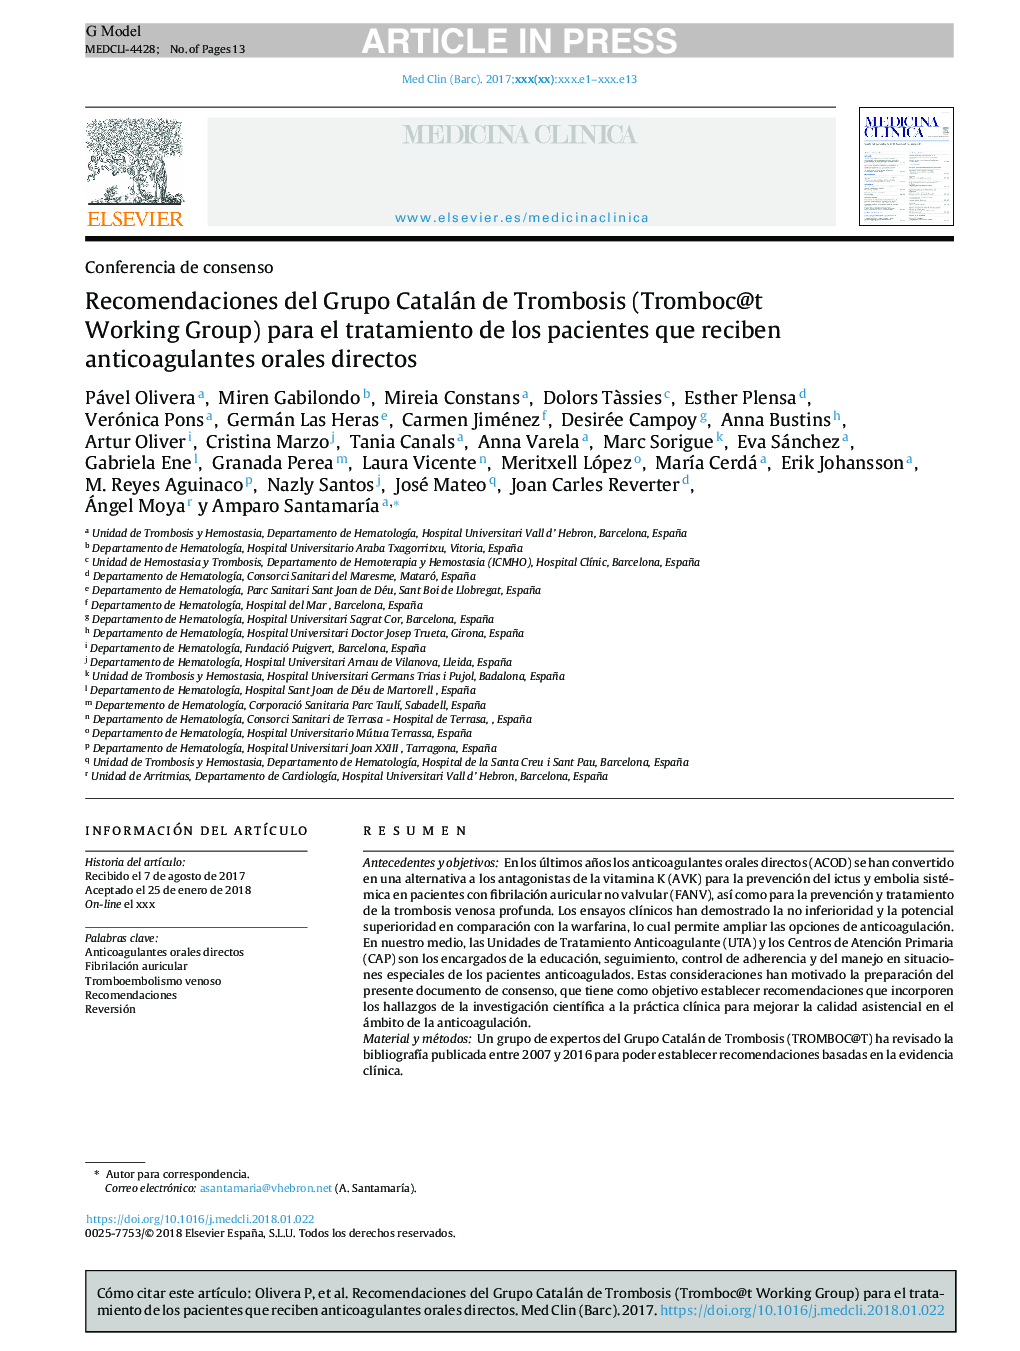 Recomendaciones del Grupo Catalán de Trombosis (Tromboc@t Working Group) para el tratamiento de los pacientes que reciben anticoagulantes orales directos